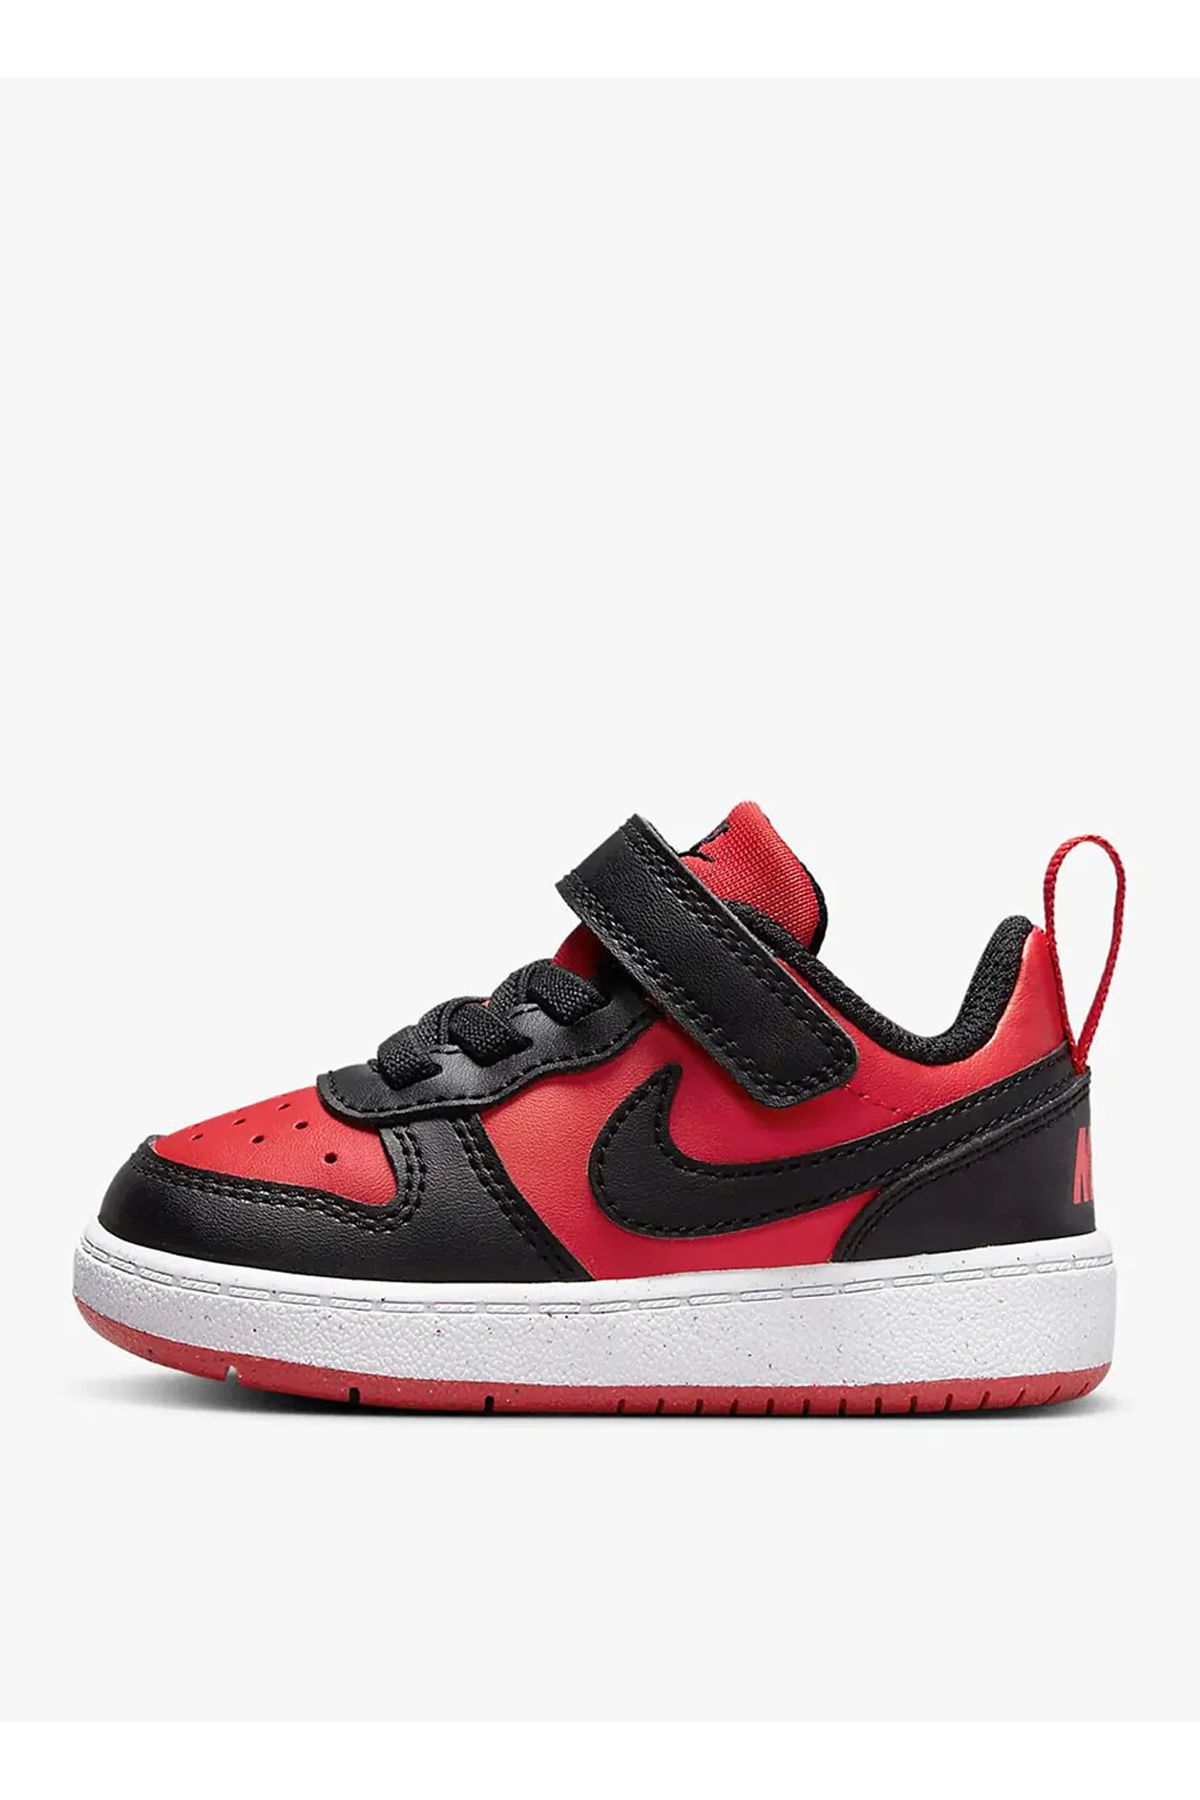 Nike Siyah - Kırmızı Bebek Yürüyüş Ayakkabısı DV5458-600 COURT BOROUGH LOW TD